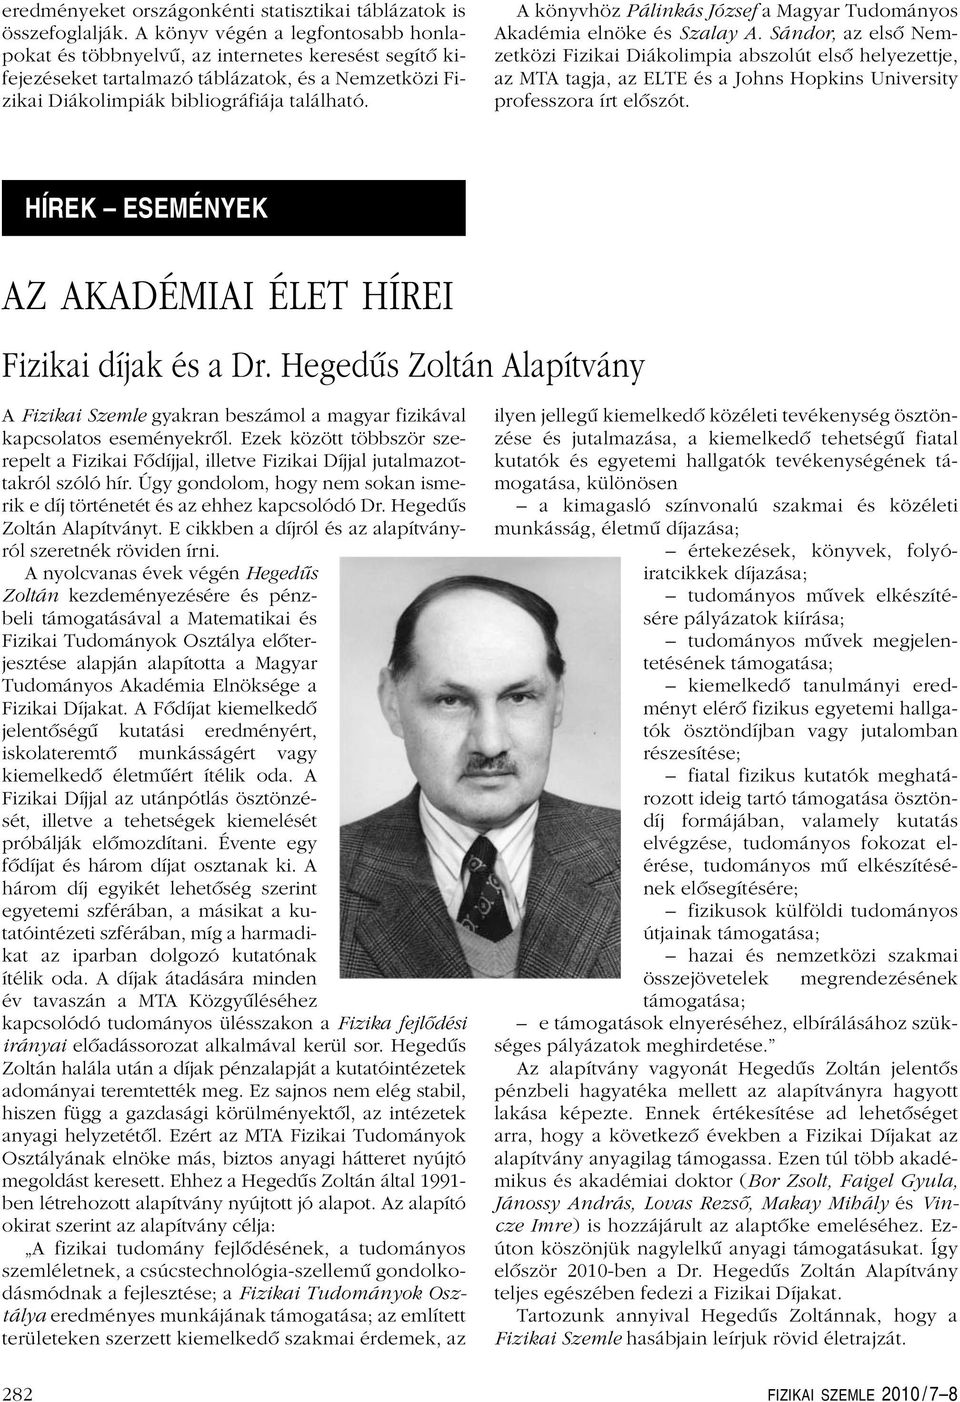 A könyvhöz Pálinkás József a Magyar Tudományos Akadémia elnöke és Szalay A.